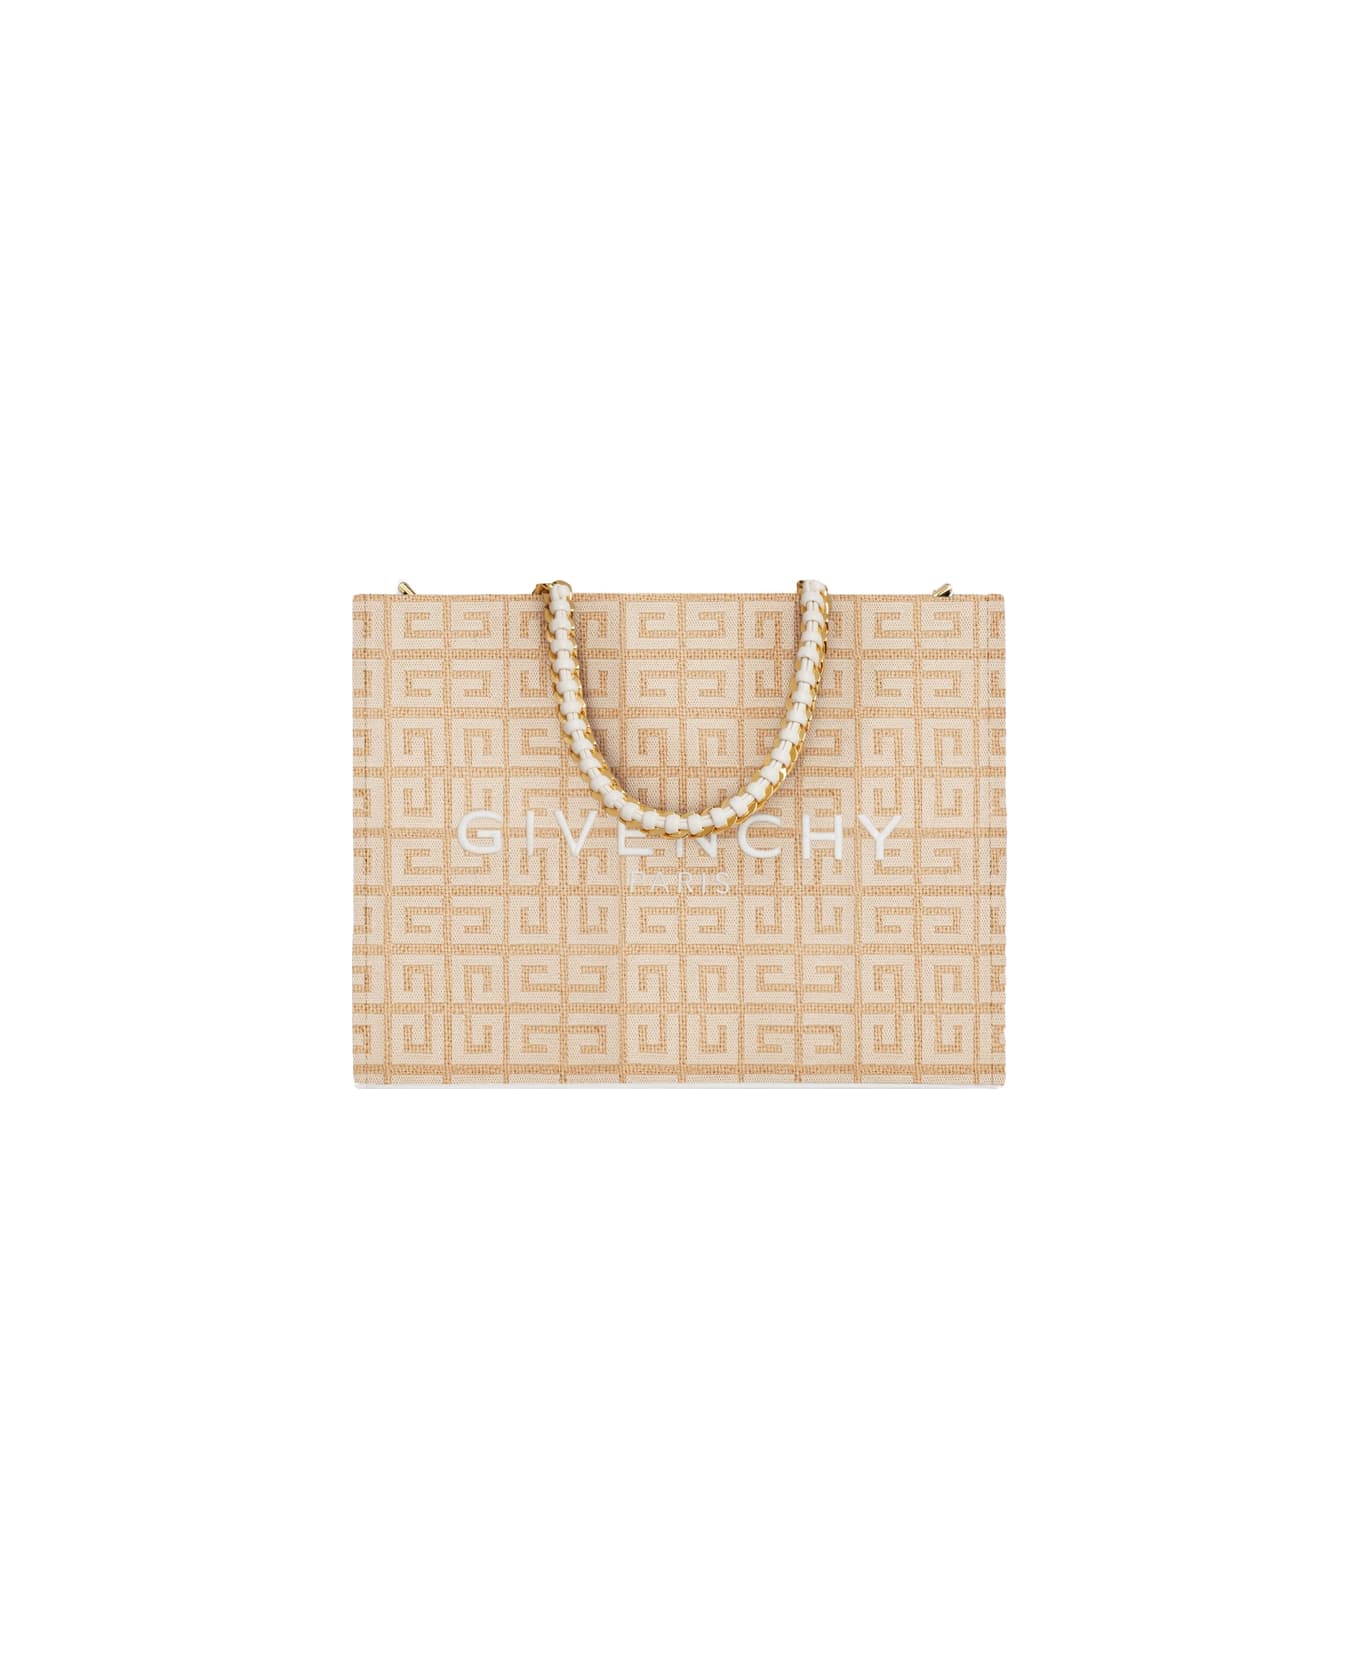 Givenchy G-tote Handbag - Brown